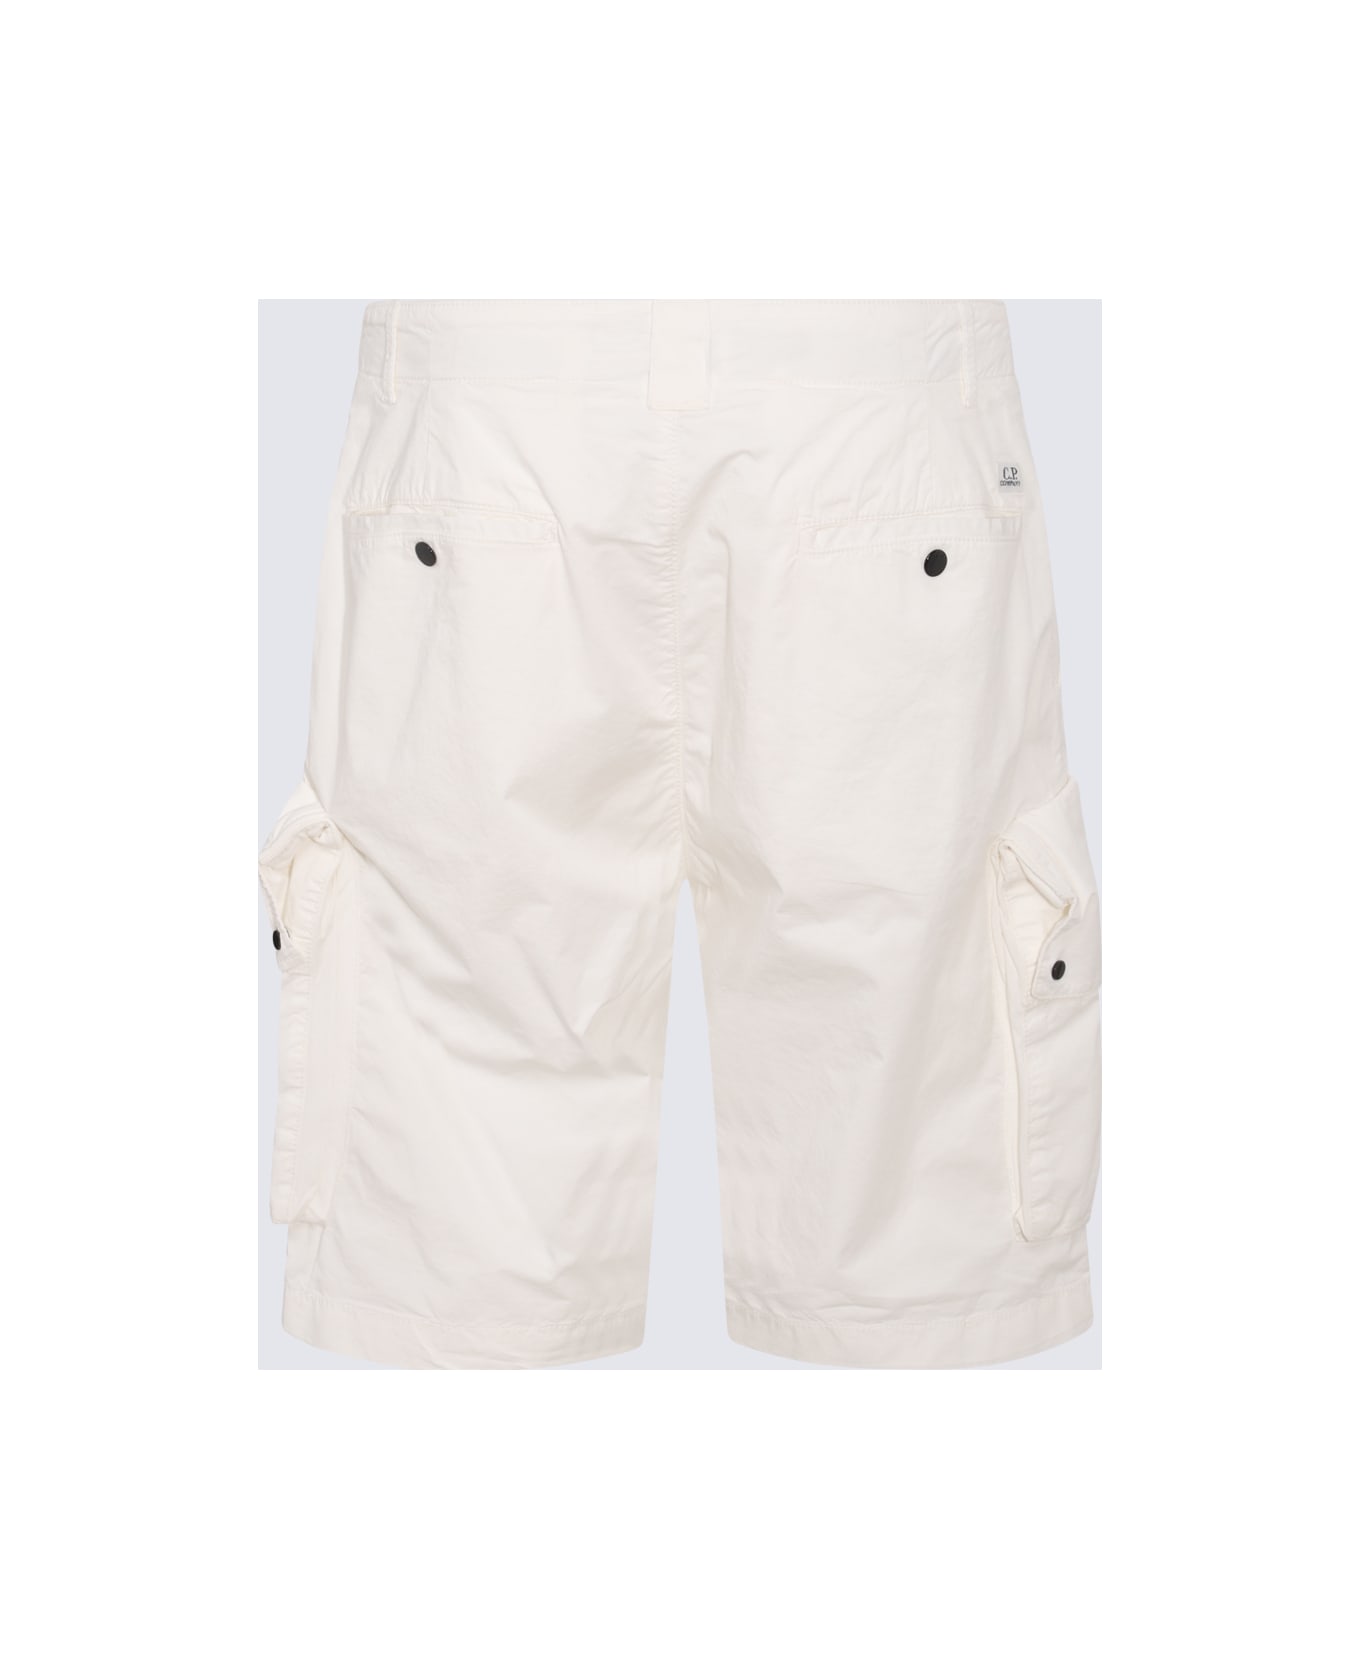 C.P. Company Gauze White Cotton Cargo Shorts - GAUZE WHITE